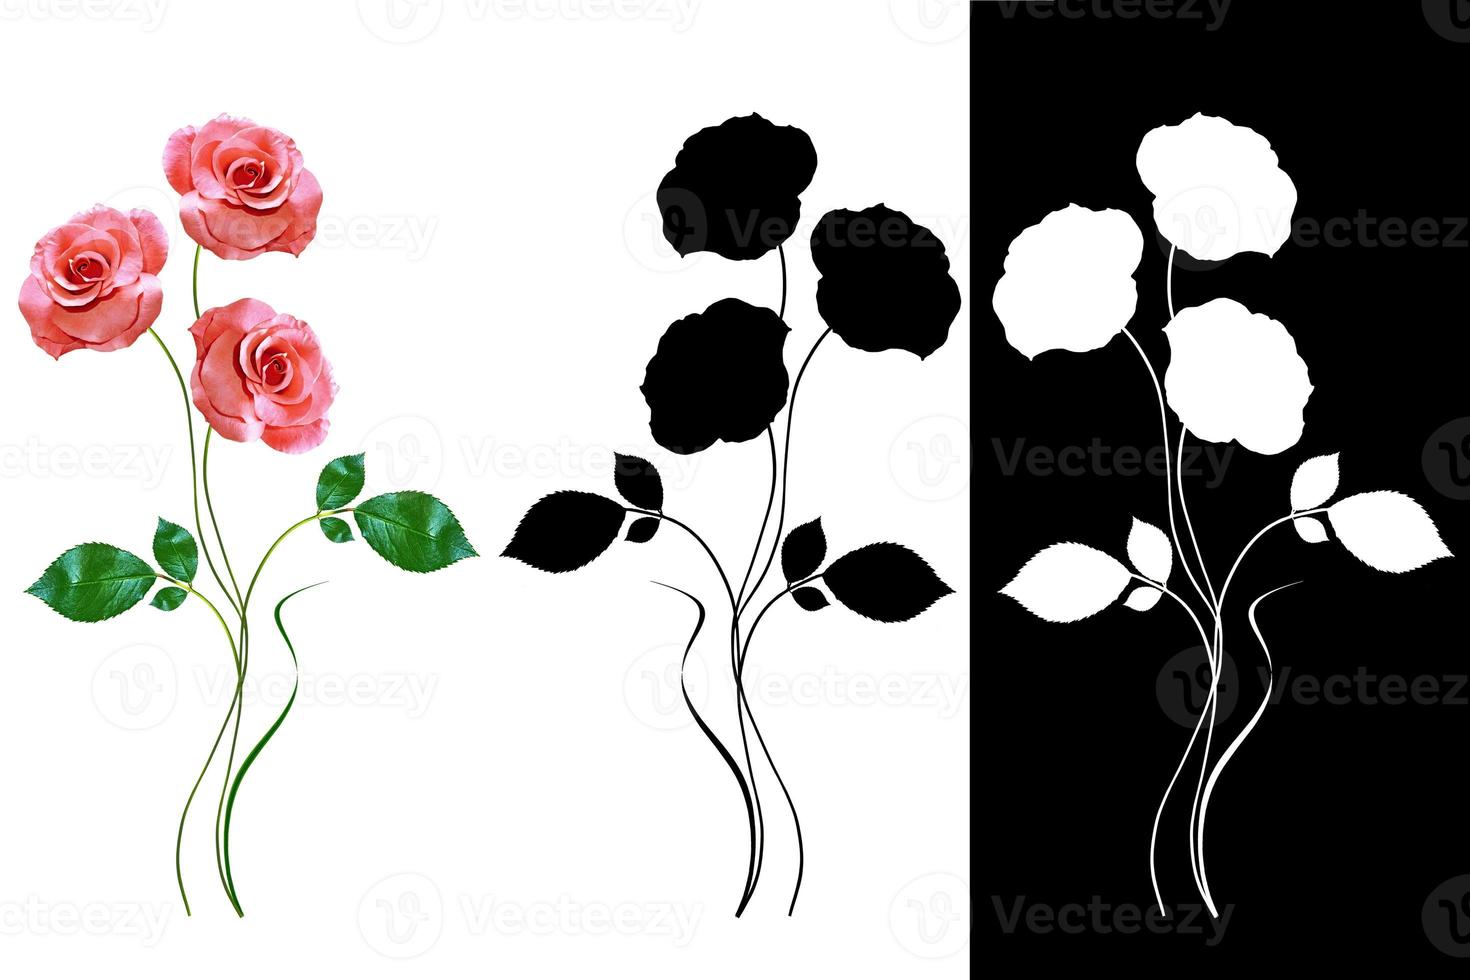 blomknoppar av rosor isolerad på vit bakgrund foto